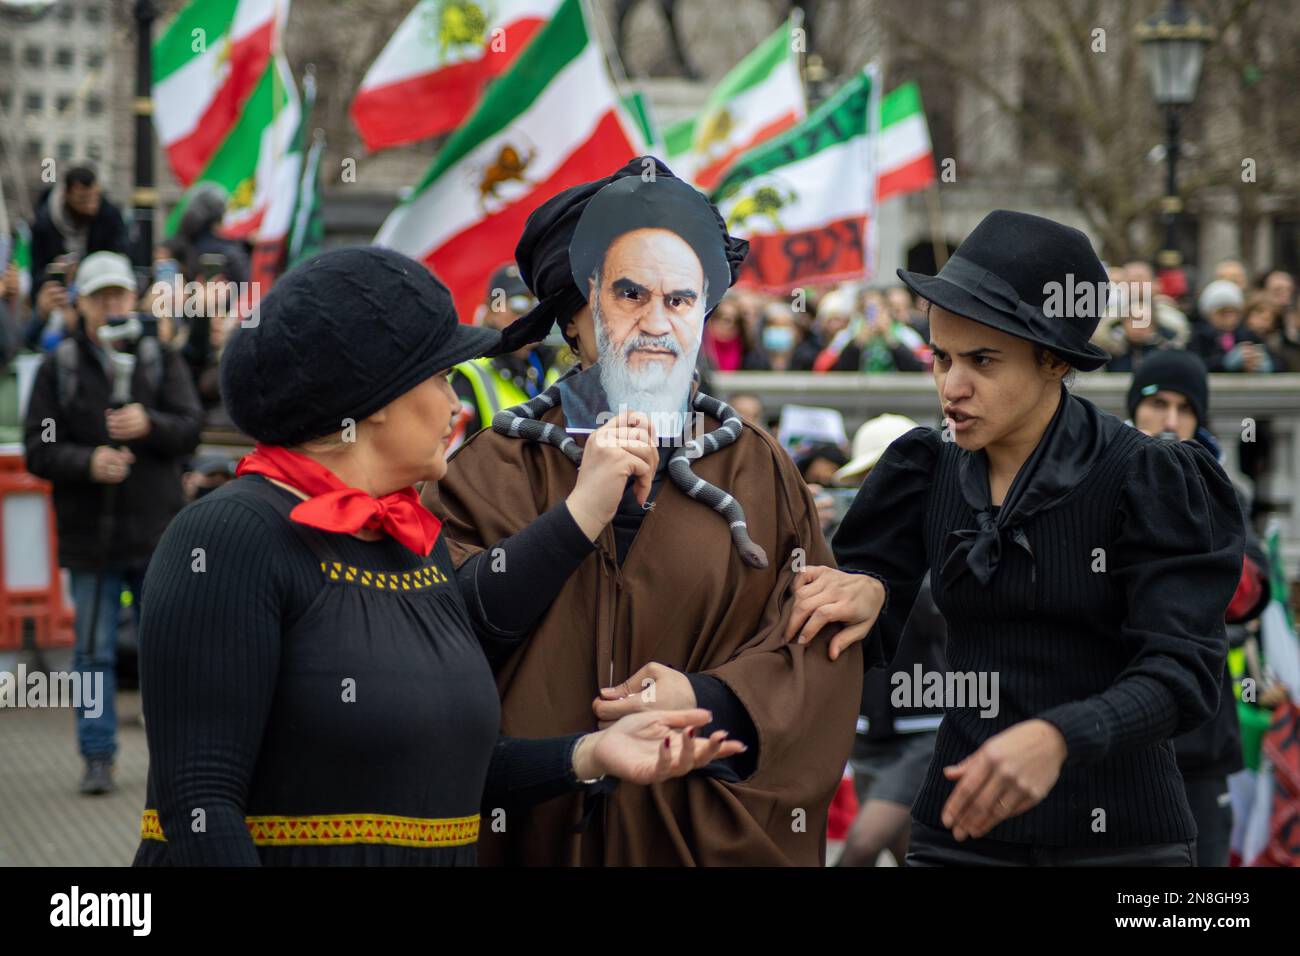 Londra, Regno Unito - 11 febbraio 2023: Khomeini, il leader della rivoluzione islamica, è rappresentato in una performance di manifestanti. Oggi ricorre il 44th° anniversario della Rivoluzione islamica in Iran. Dopo più di cinque mesi di continua protesta a sostegno della donna, della vita, del movimento per la libertà, migliaia di manifestanti si sono riuniti a Trafalgar Sq. Denunciare il regime in Iran. I manifestanti tenevano bandiera Shir-o-Khorshid (Leone e Sole) dell'Iran, la bandiera, o il suo emblema, facevano parte dell'identità nazionale iraniana per secoli, che fu cambiata dopo la Rivoluzione islamica del 1979. Credit: Sinai Noor/Alamy Live New Foto Stock